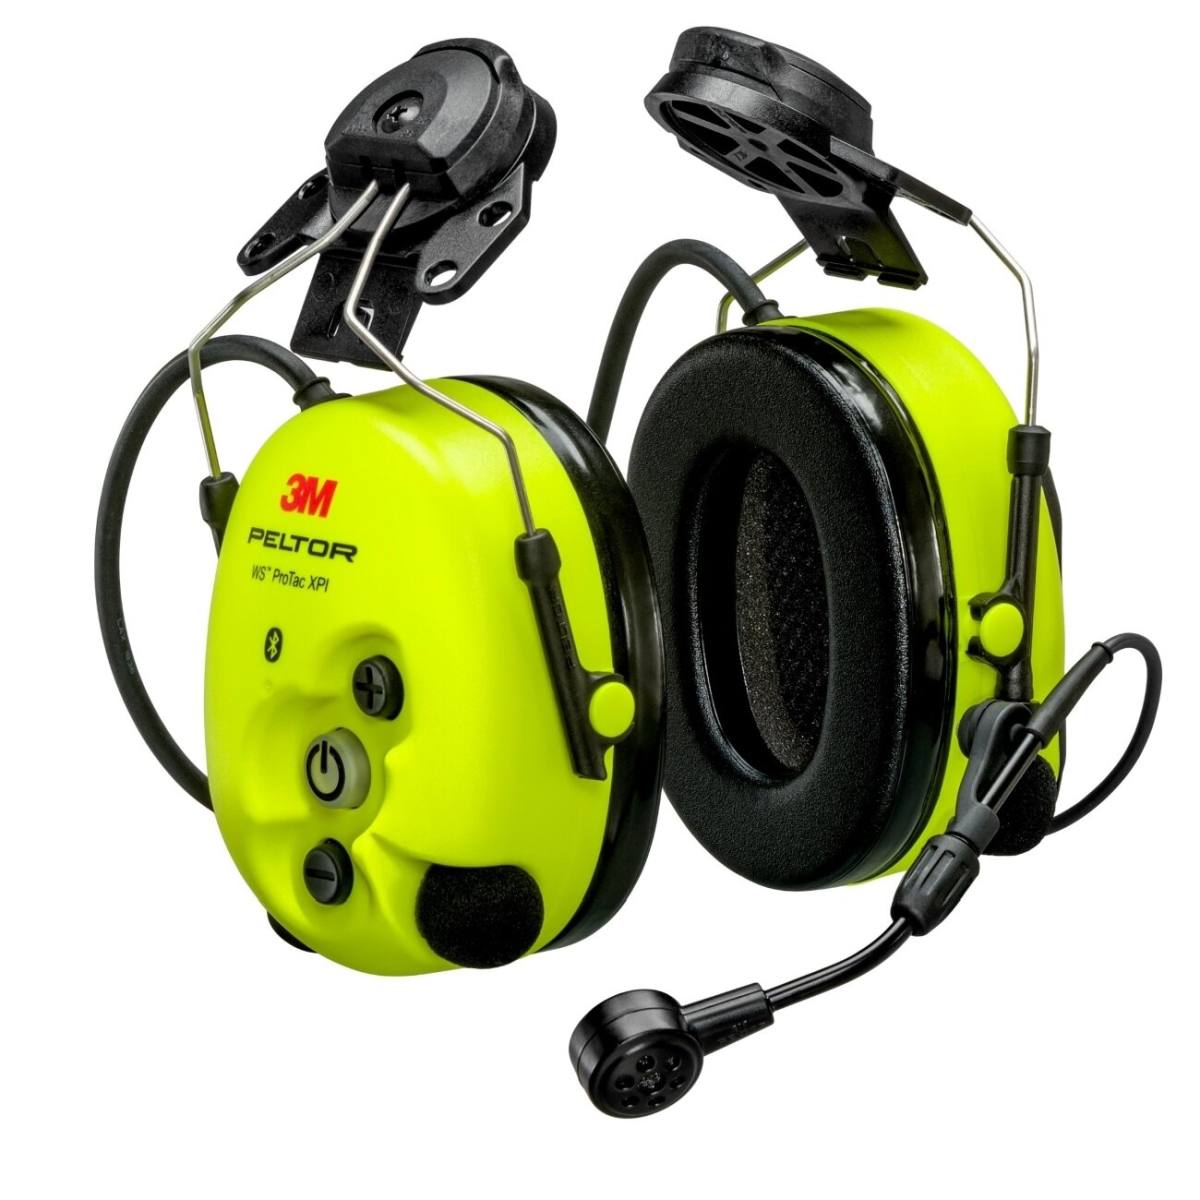  3M PELTOR WS ProTac XPI kuulonsuojaimet, kypäräkiinnitys, Bluetooth, keltainen, MT15H7P3EWS6